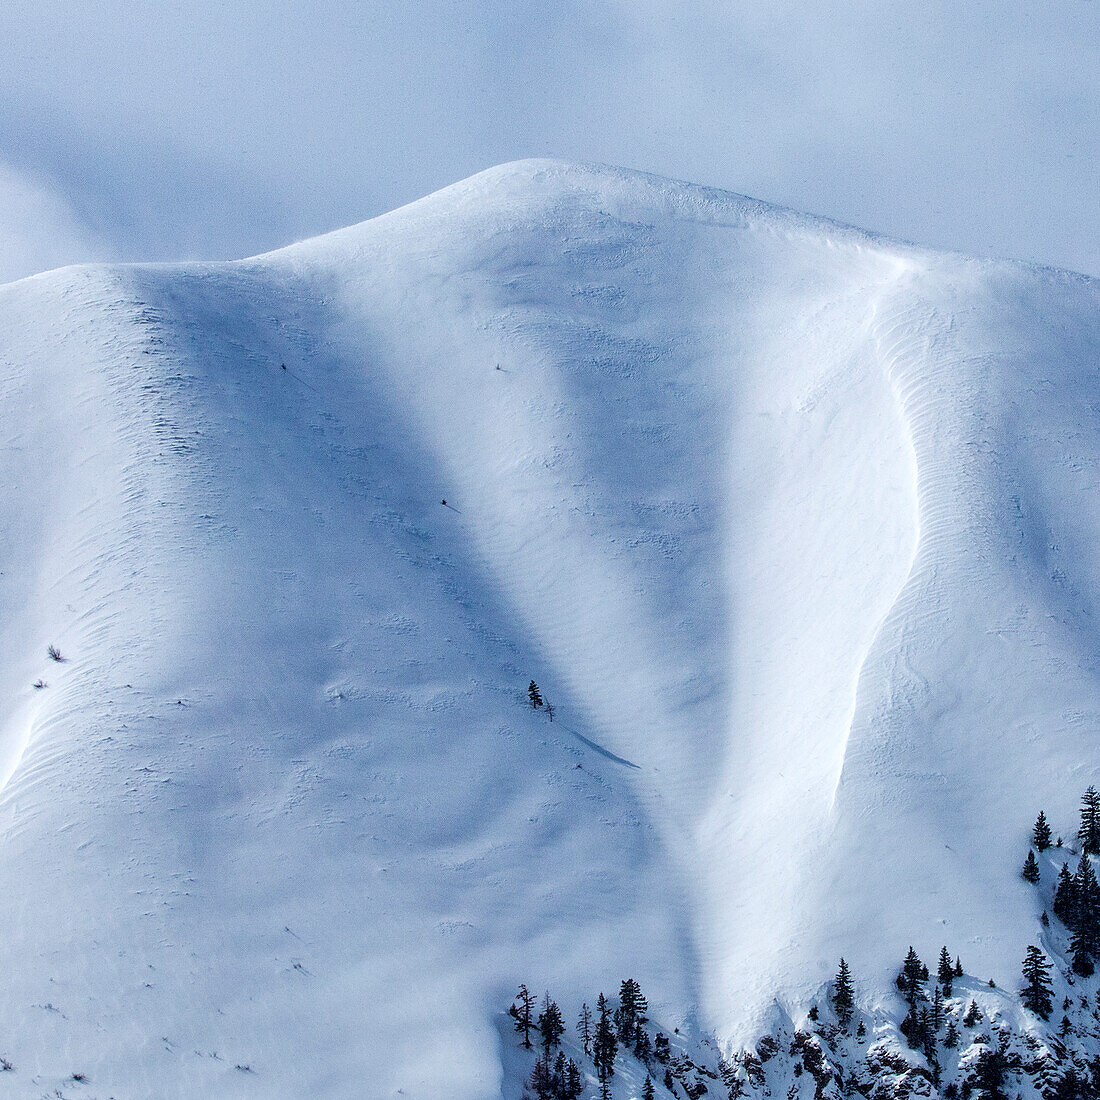 USA, Idaho, Hailey, Blick auf einen schneebedeckten Berg